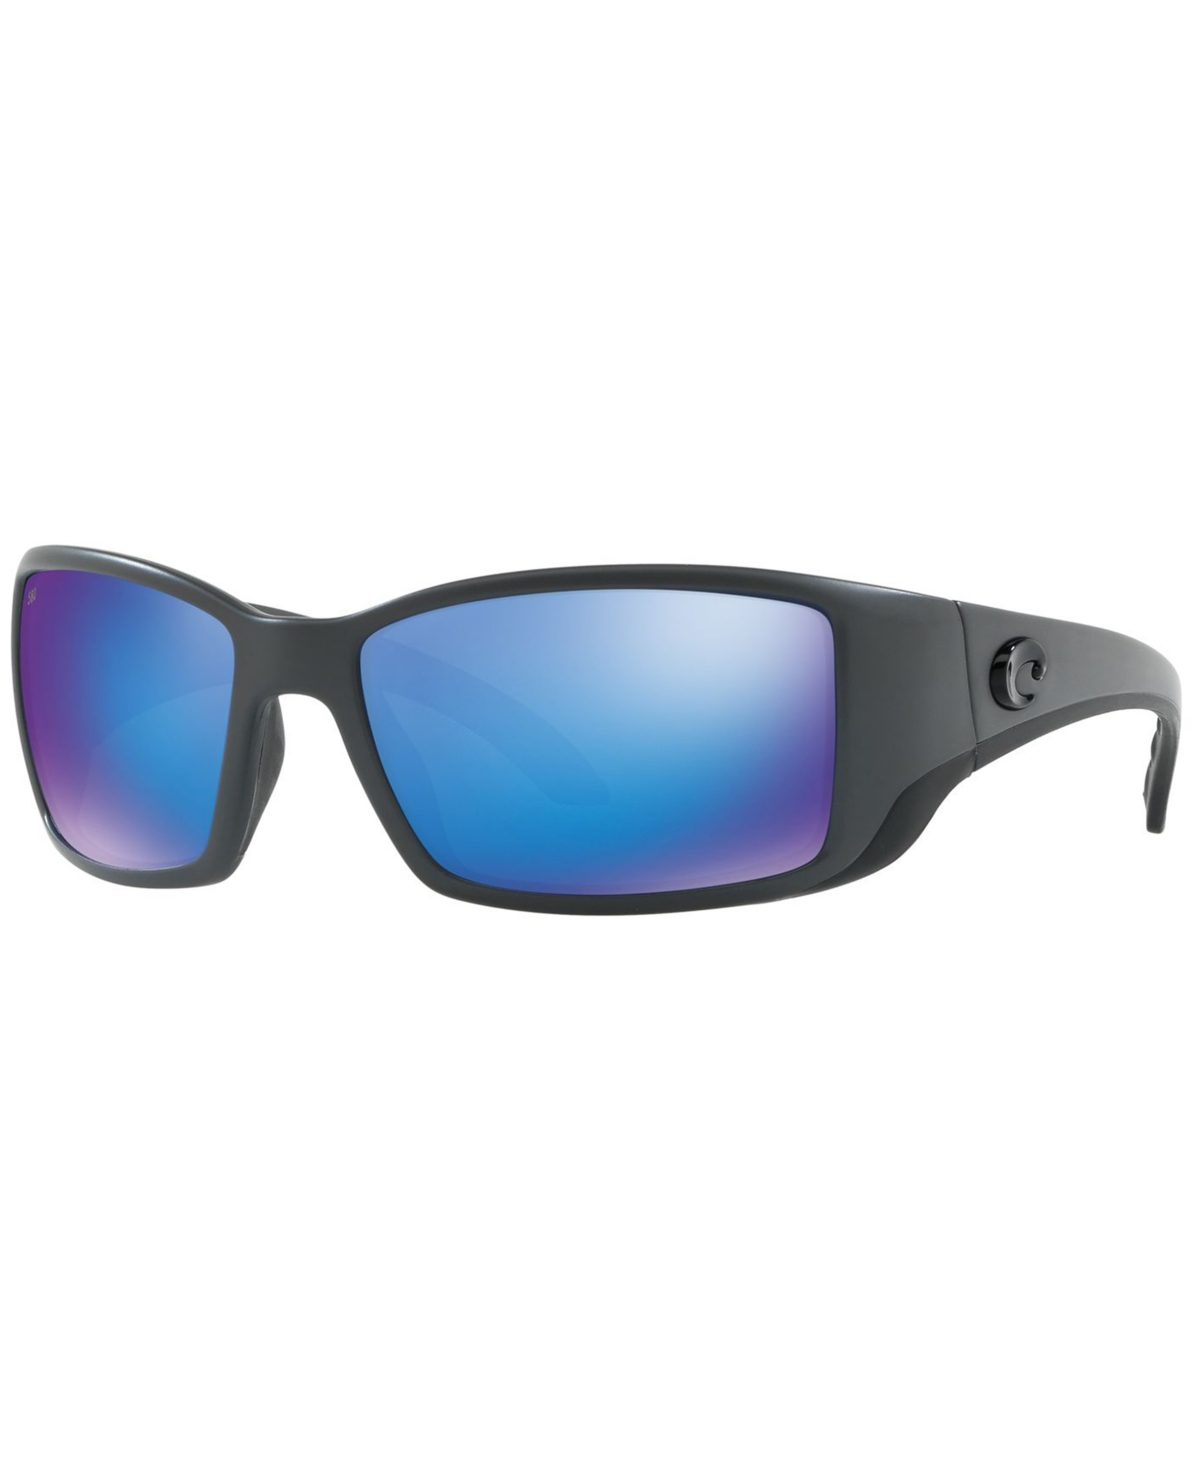 Costa Del Mar Polarized Sunglasses, Blackfin In Grey Matte,blue Mirror